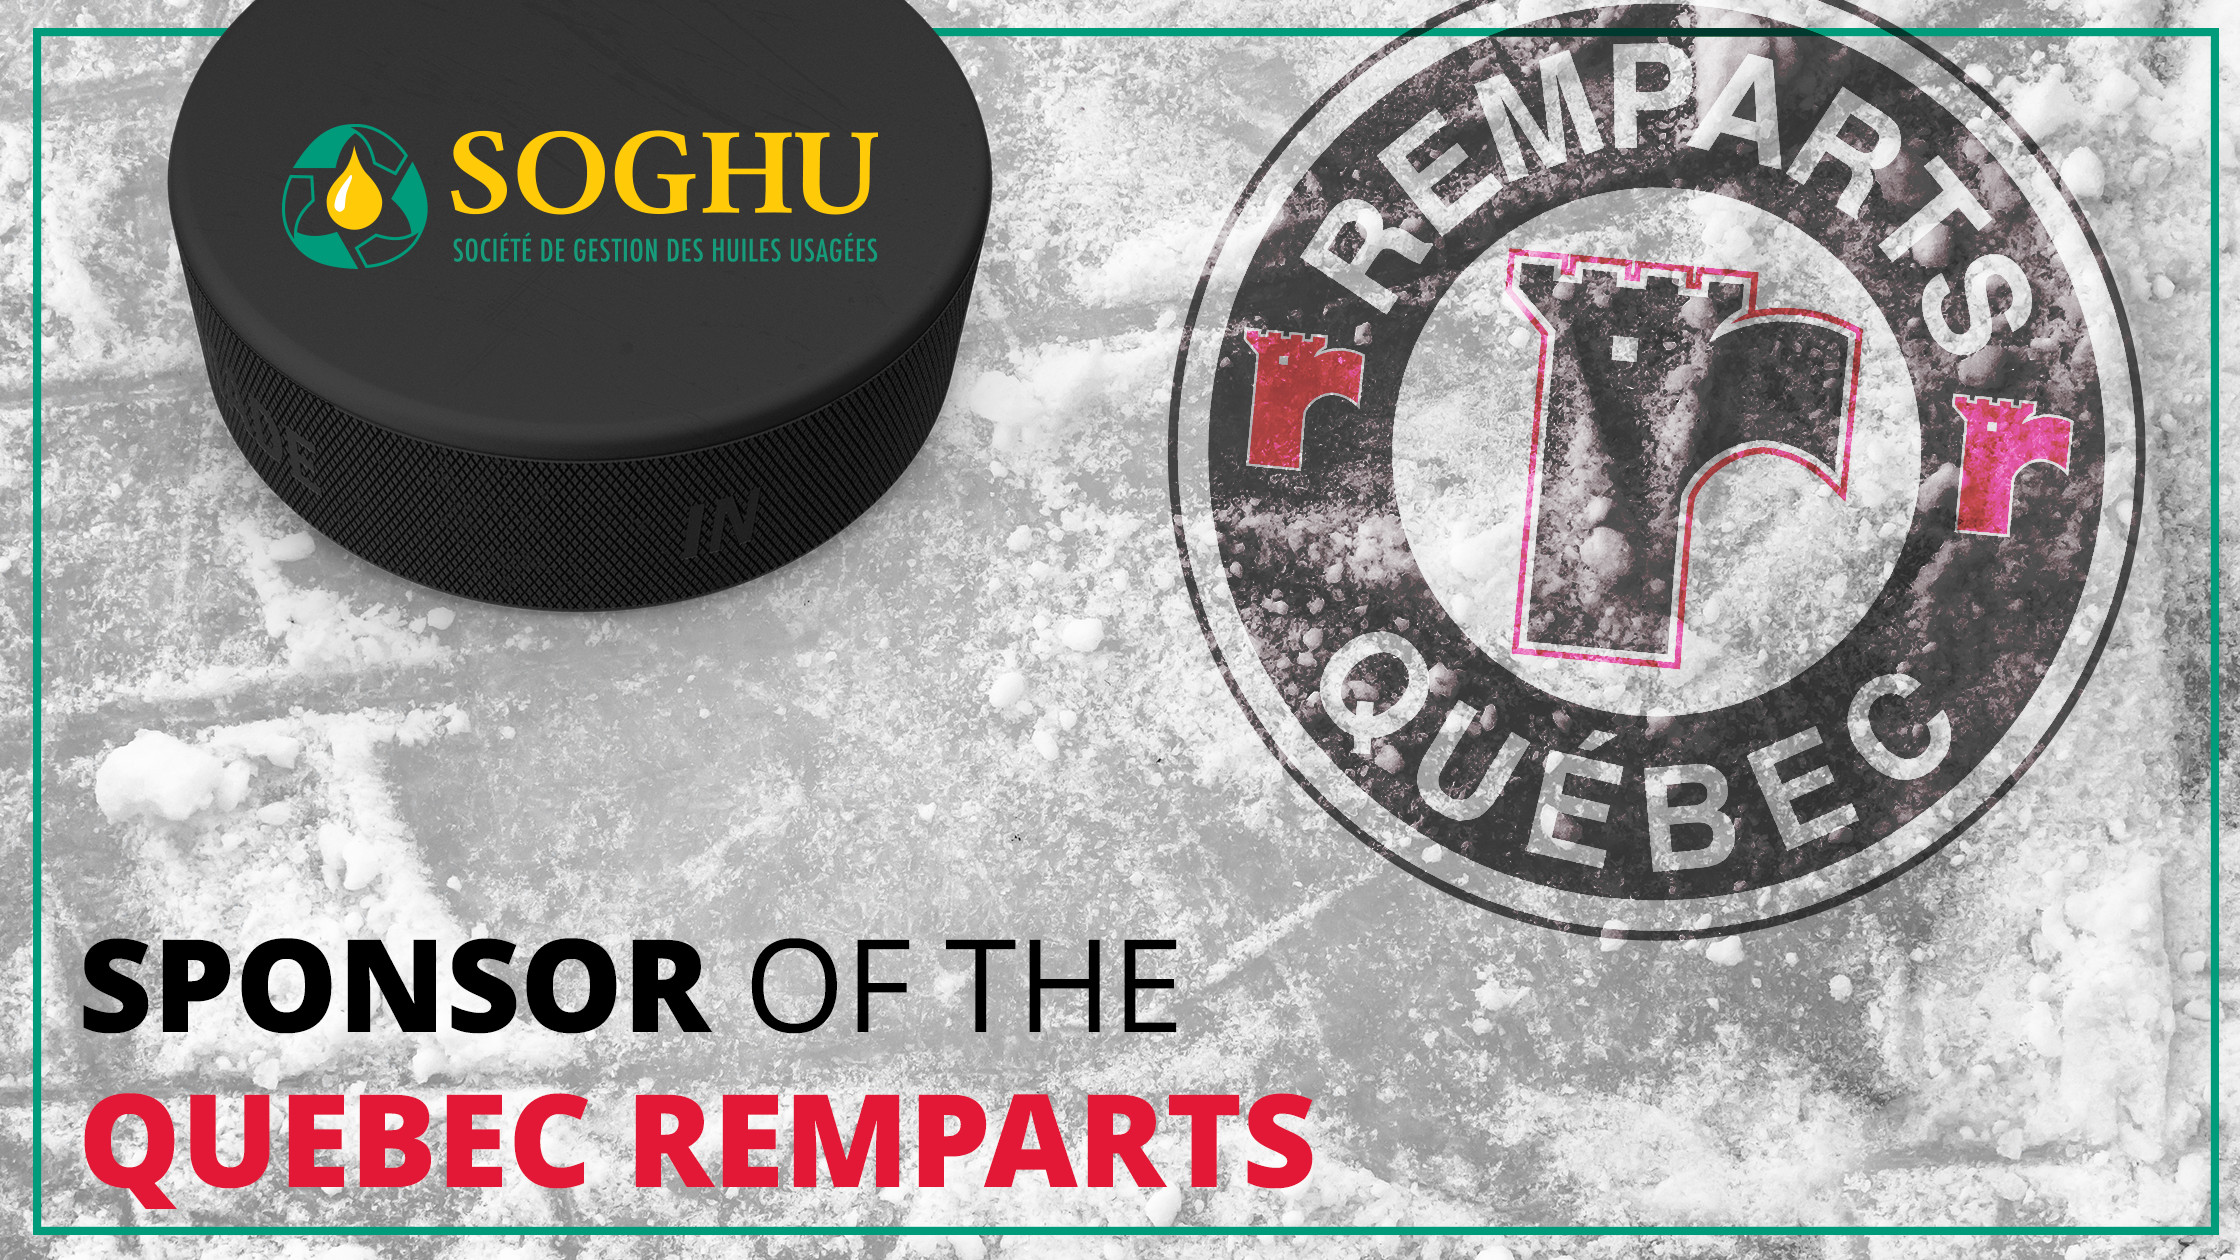 SOGHU: Sponsor of the Quebec Remparts